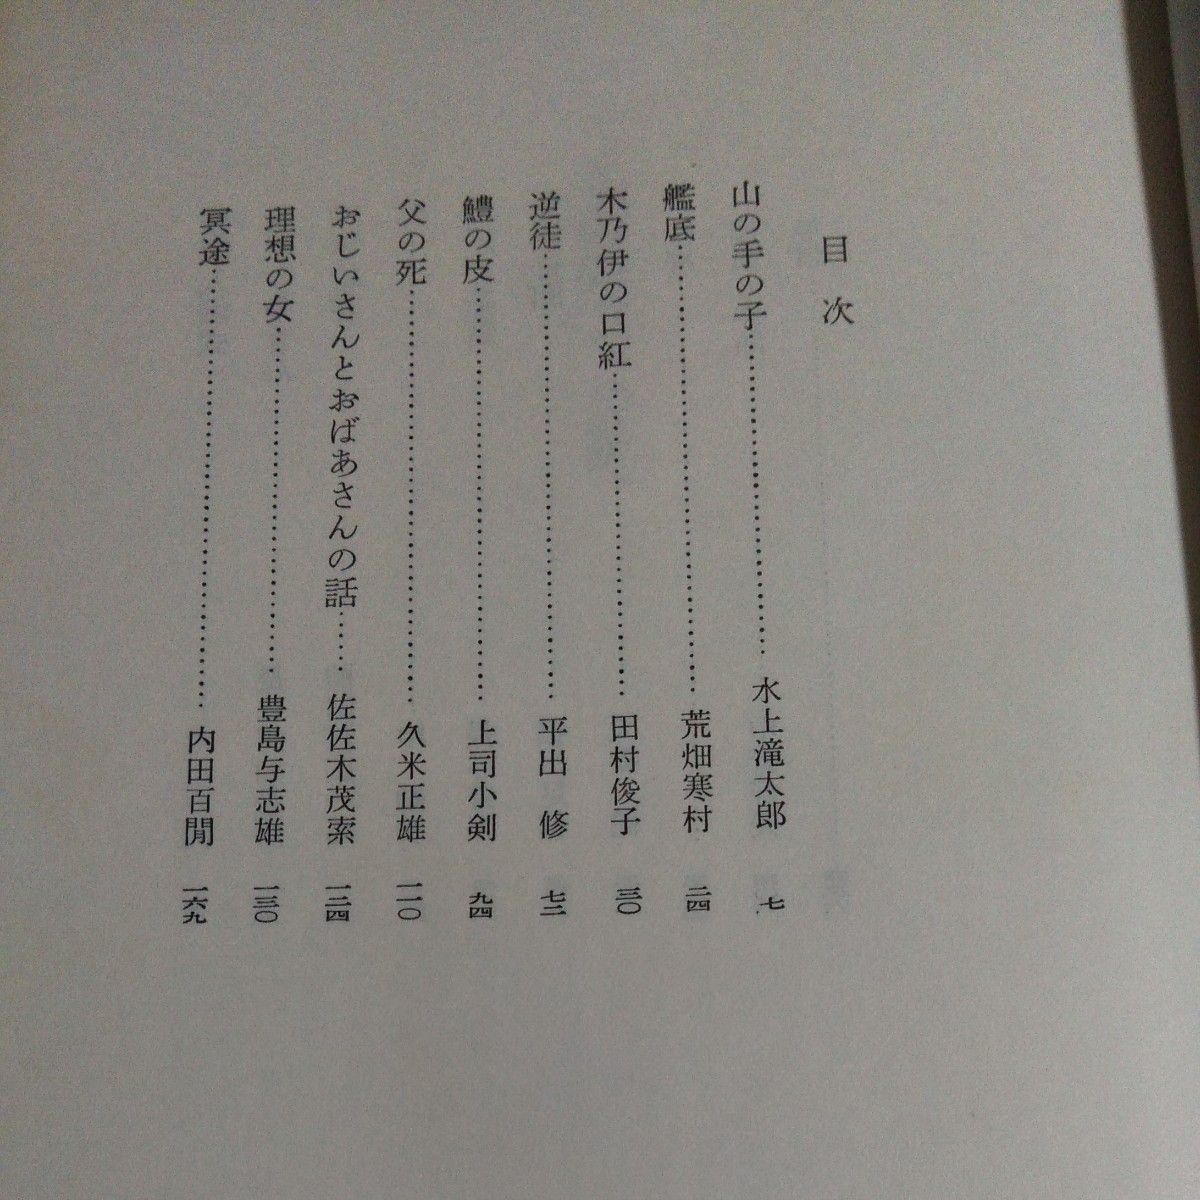 日本文学全集「名作集」(明治、大正、昭和)集英社